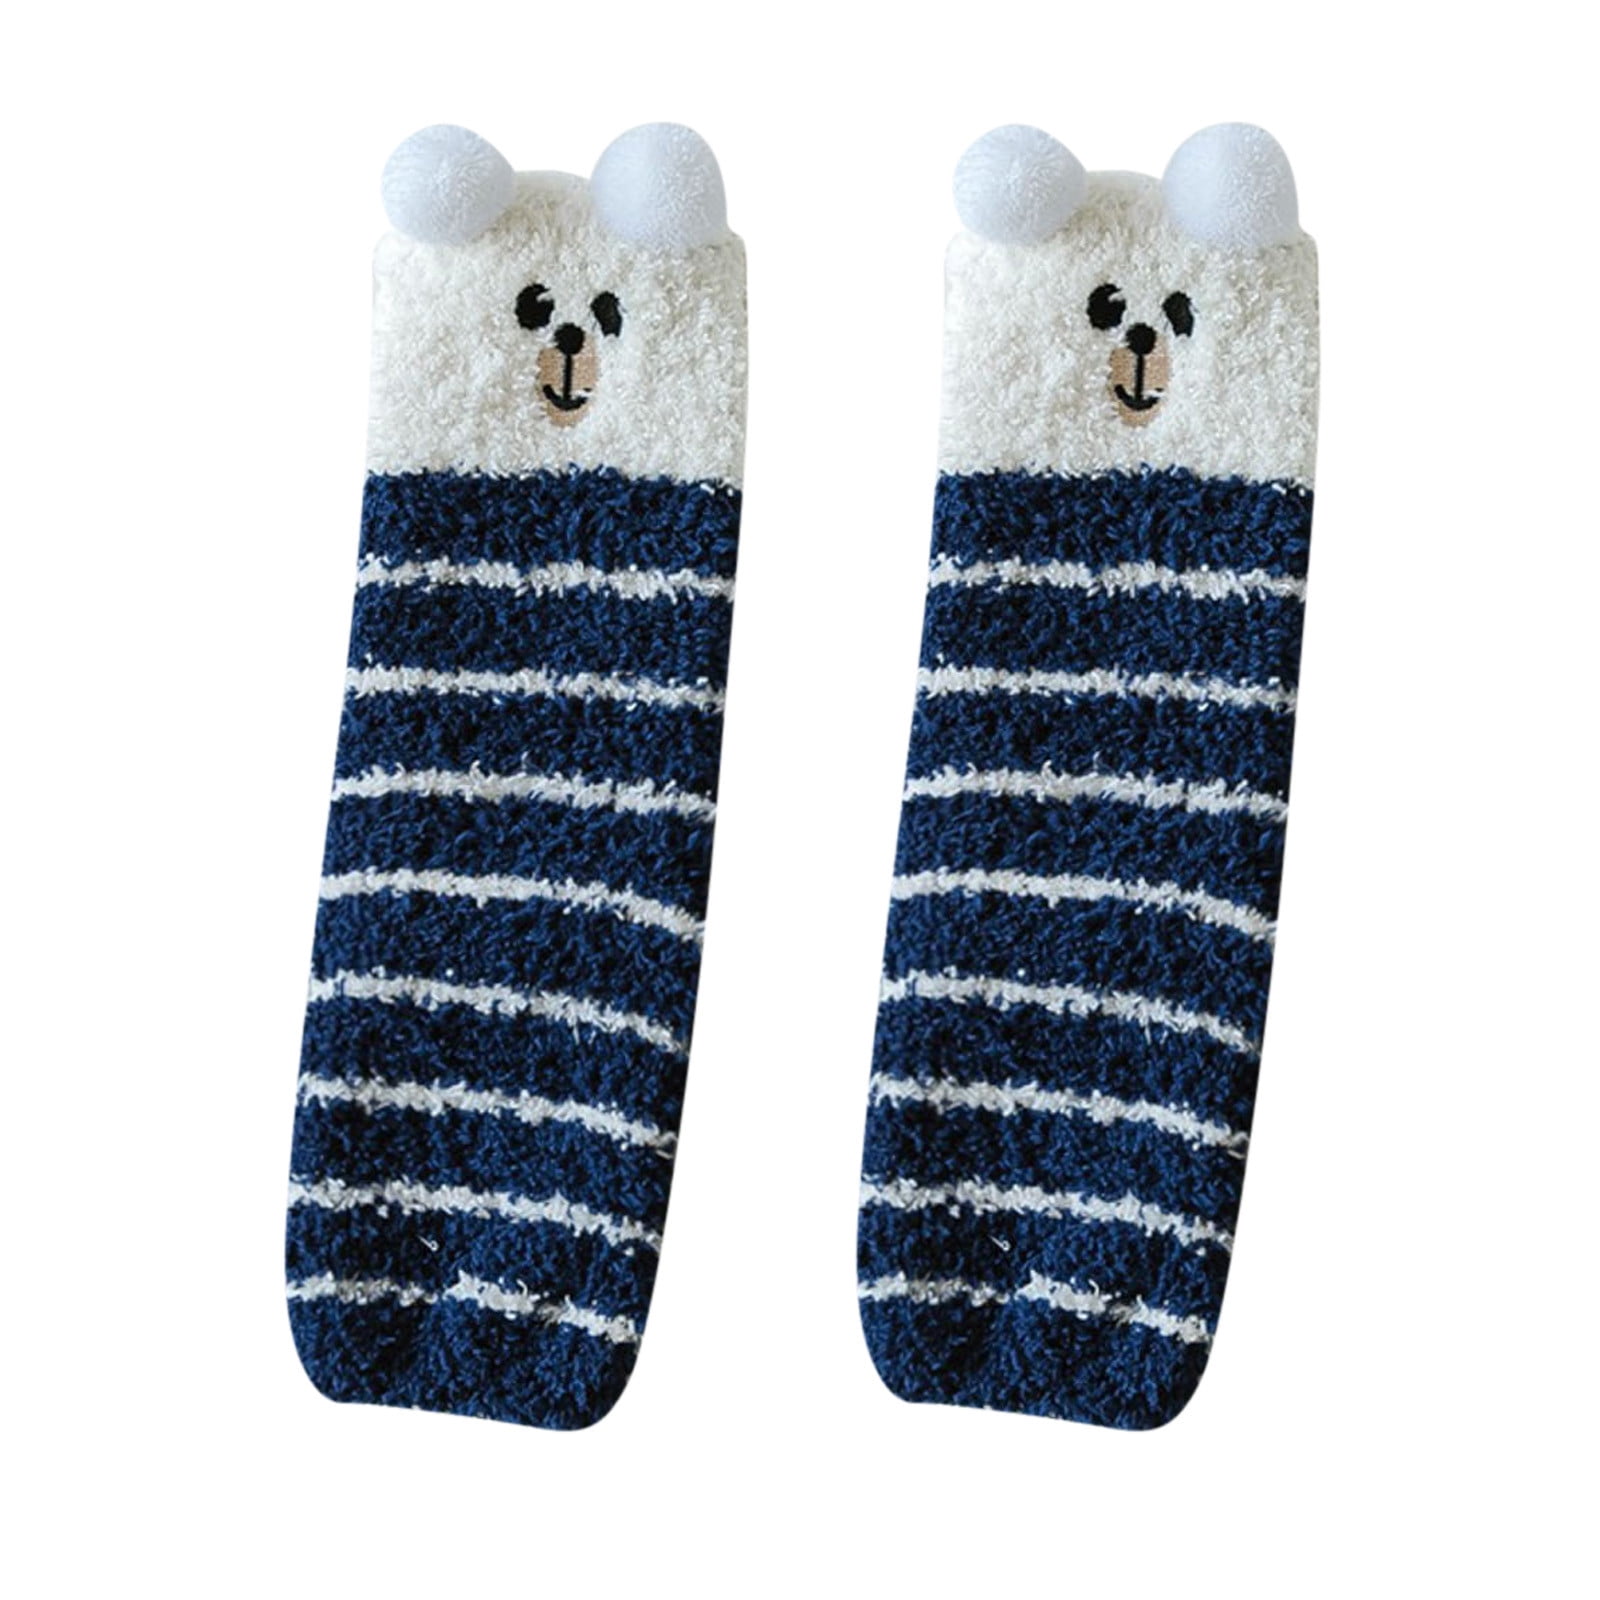 NKOOGH Mukluks Slipper Socks for Girls Mint Tube Socks Womens